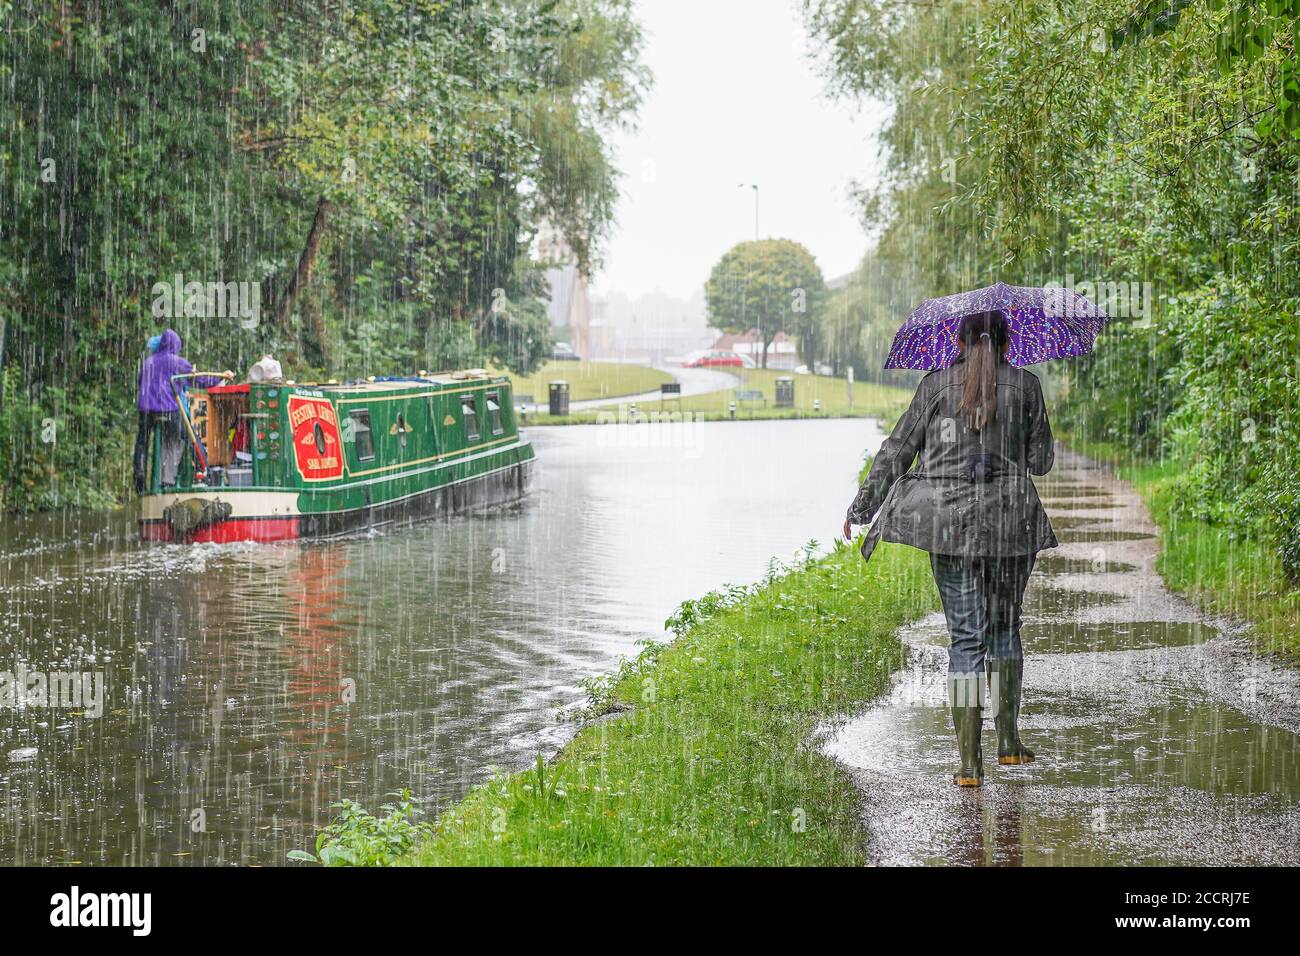 Rückansicht einer Frau in Gummistiefel, die unter einem Regenschirm auf dem Abschleppweg neben dem sich bewegenden Schmalboot auf dem britischen Kanal bei starkem Sommerregen in Großbritannien unterkommt. Stockfoto